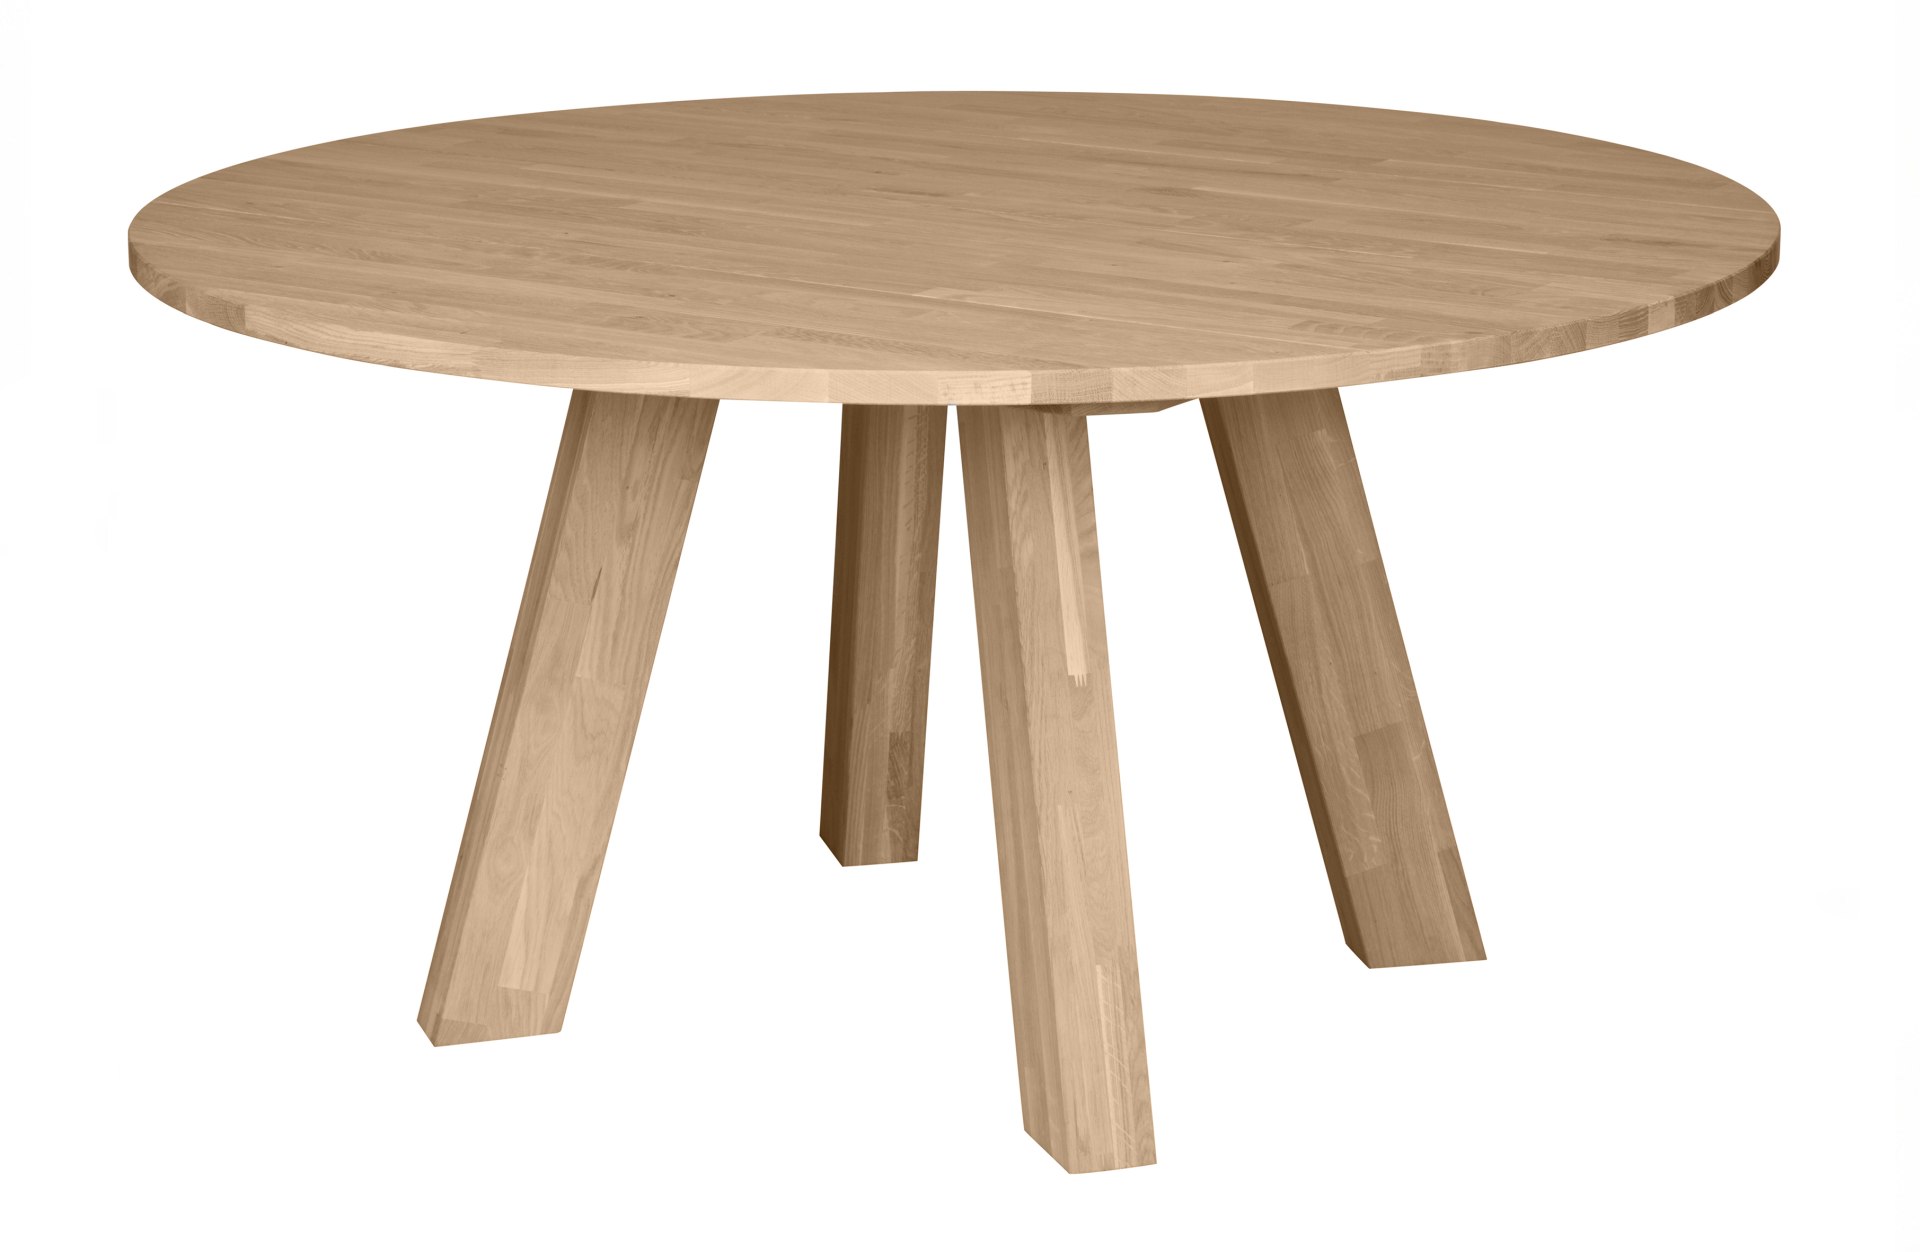 Der Esstisch Rhonda überzeugt mit seinem klassischen Design. Gefertigt wurde er aus Eichenholz, welches einen natürlichen Farbton besitzt. Das Gestell ist auch aus Eichenholz. Der Durchmesser des Tisches beträgt 150 cm.